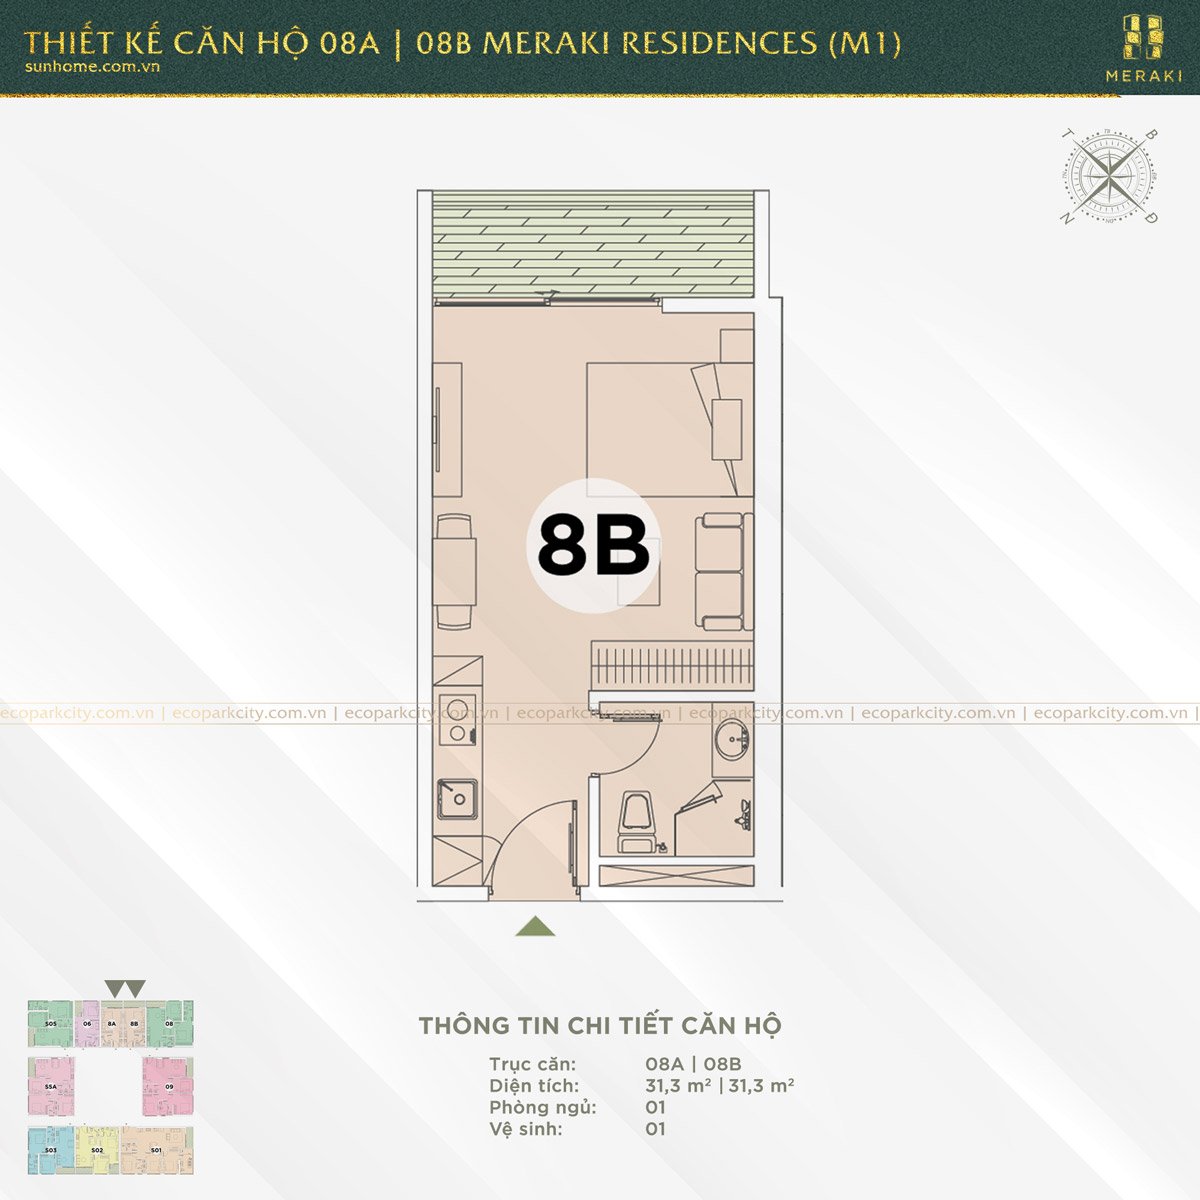 Thiết kế căn hộ 08A và 08B Meraki Residences (M1)